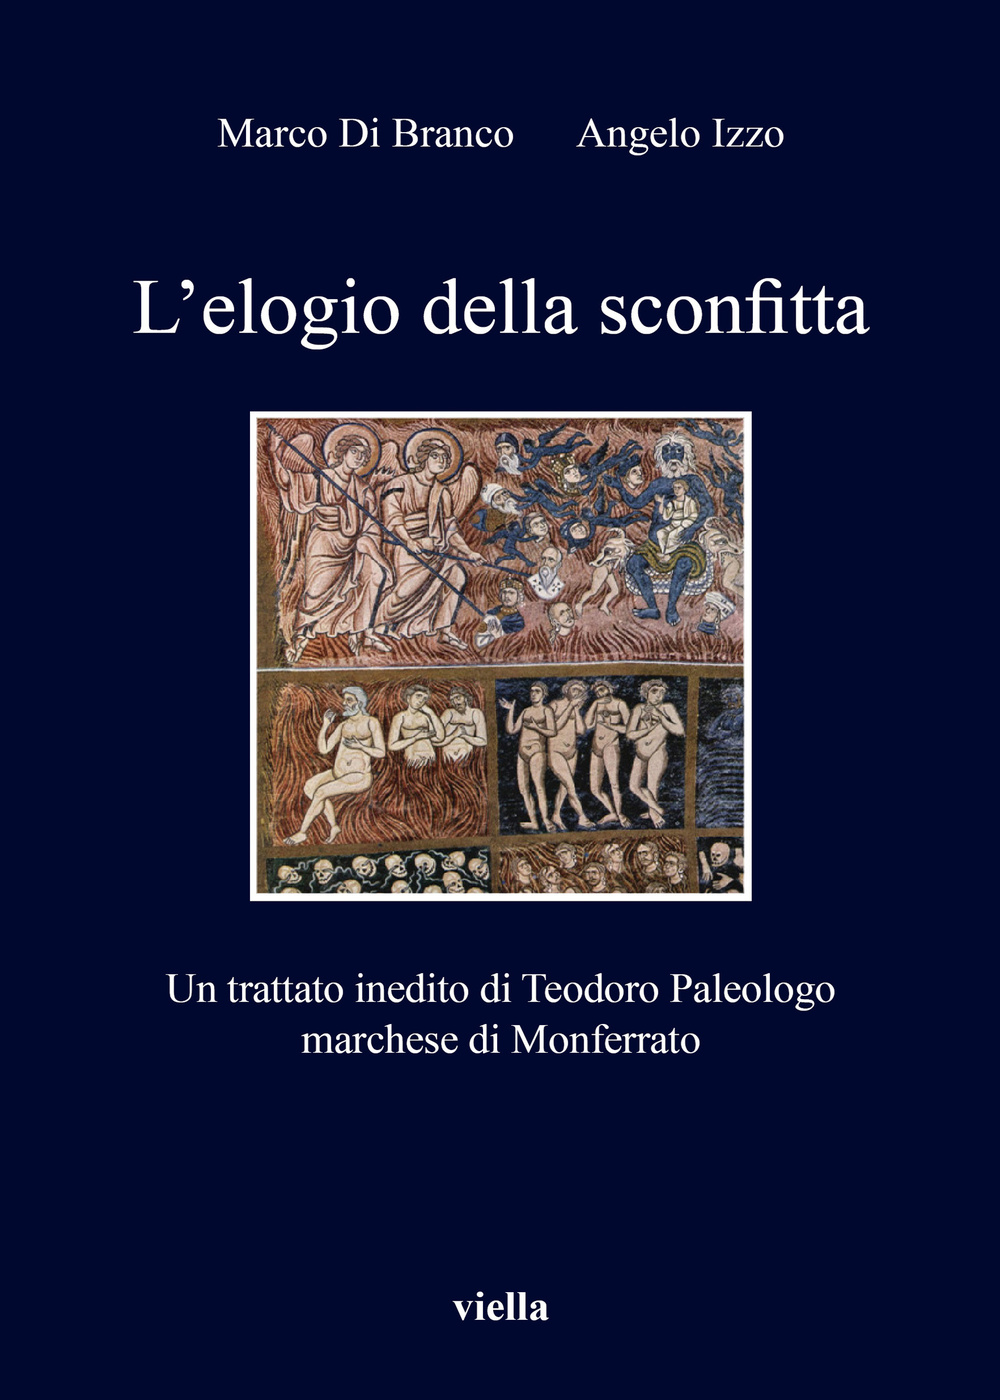 L'elogio della sconfitta. Un trattato inedito di Teodoro Paleologo, marchese di Monferrato